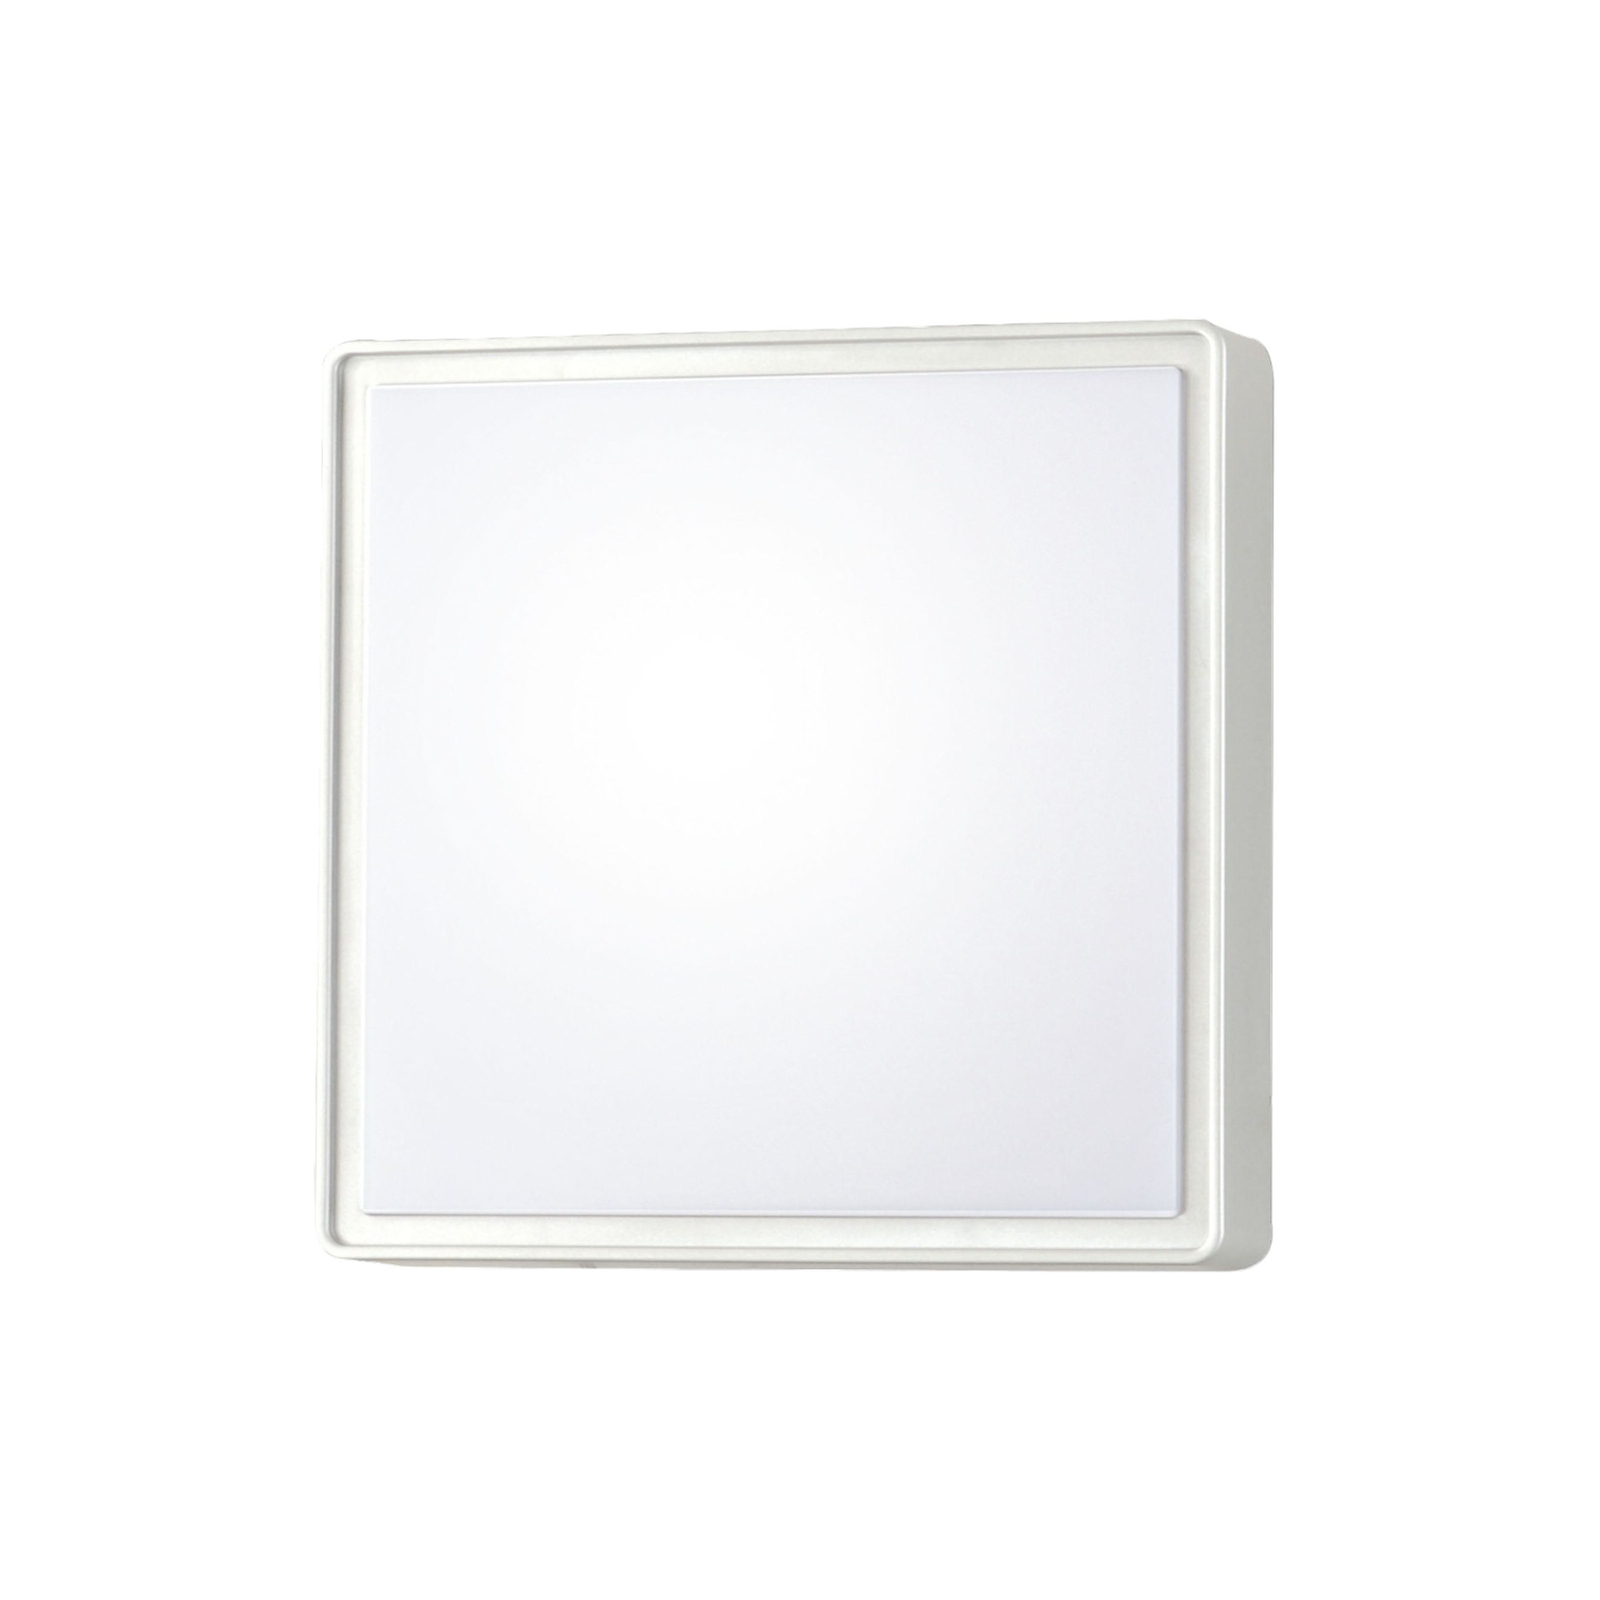 Φωτιστικό τοίχου Oban LED, 30 cm x 30 cm, λευκό, IP65